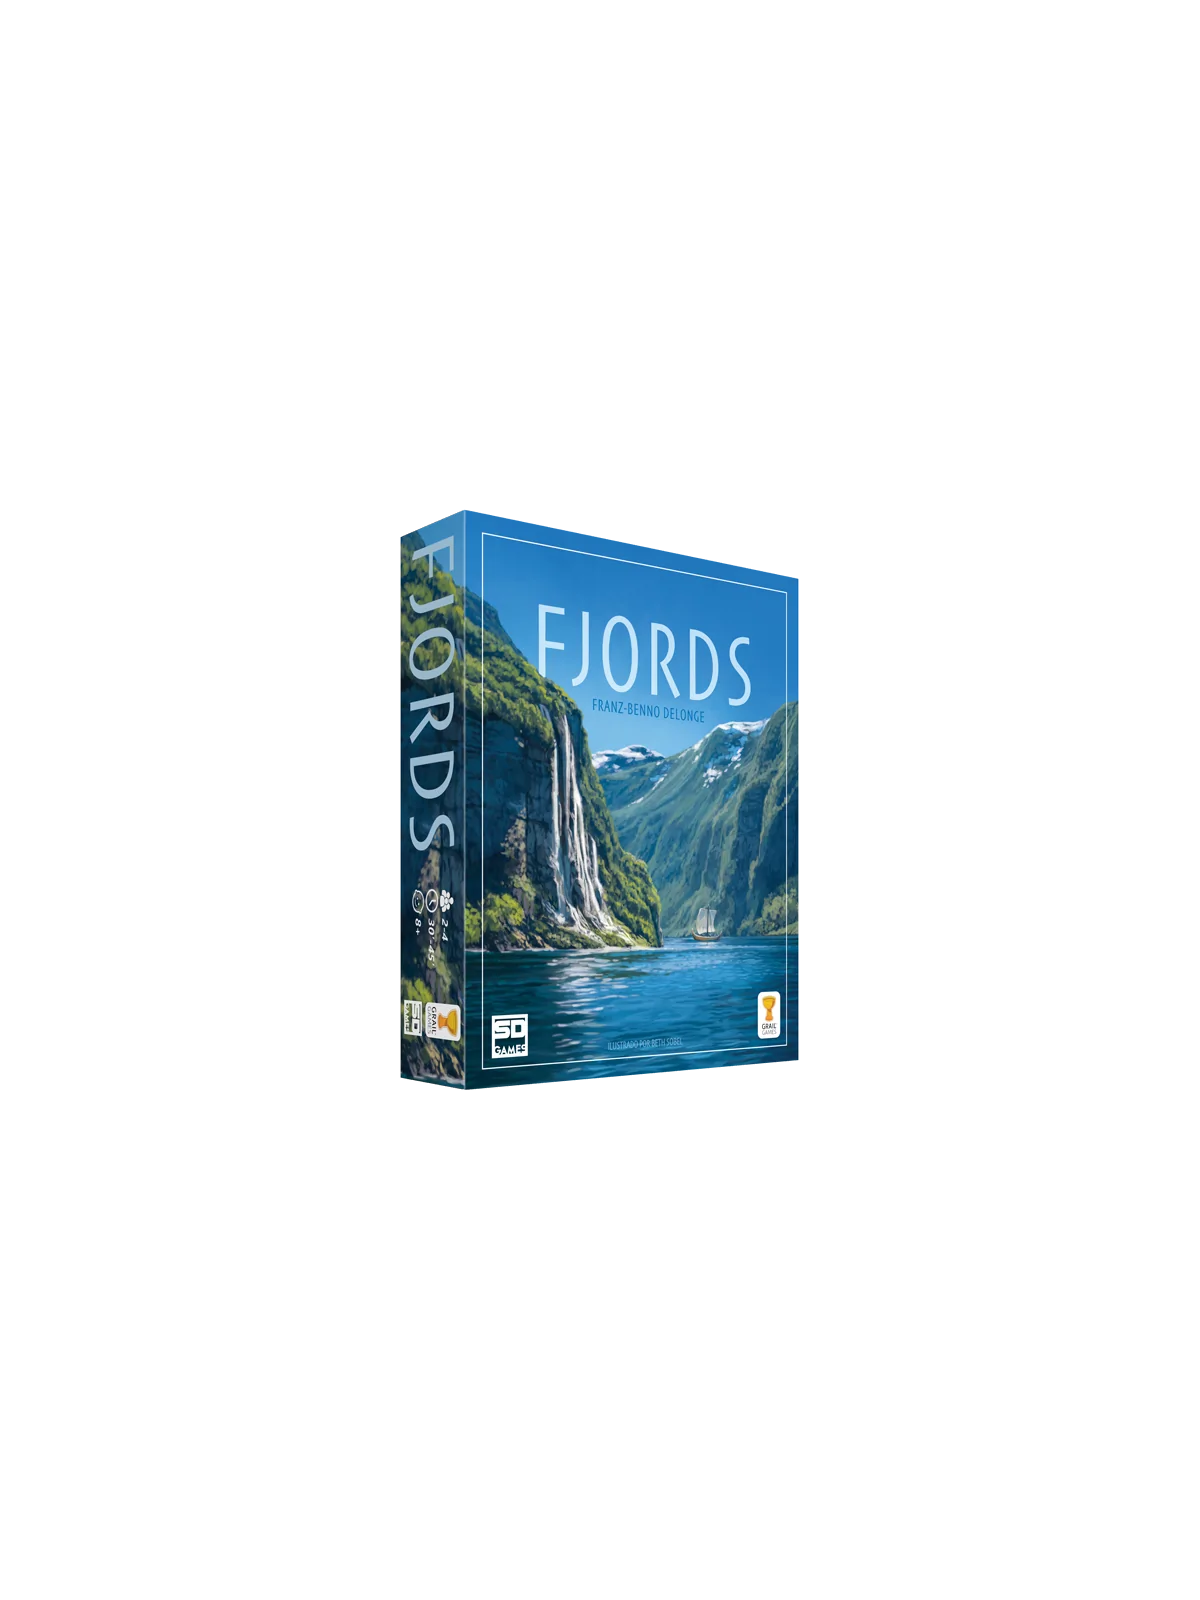 Comprar Fjords barato al mejor precio 35,99 € de SD GAMES